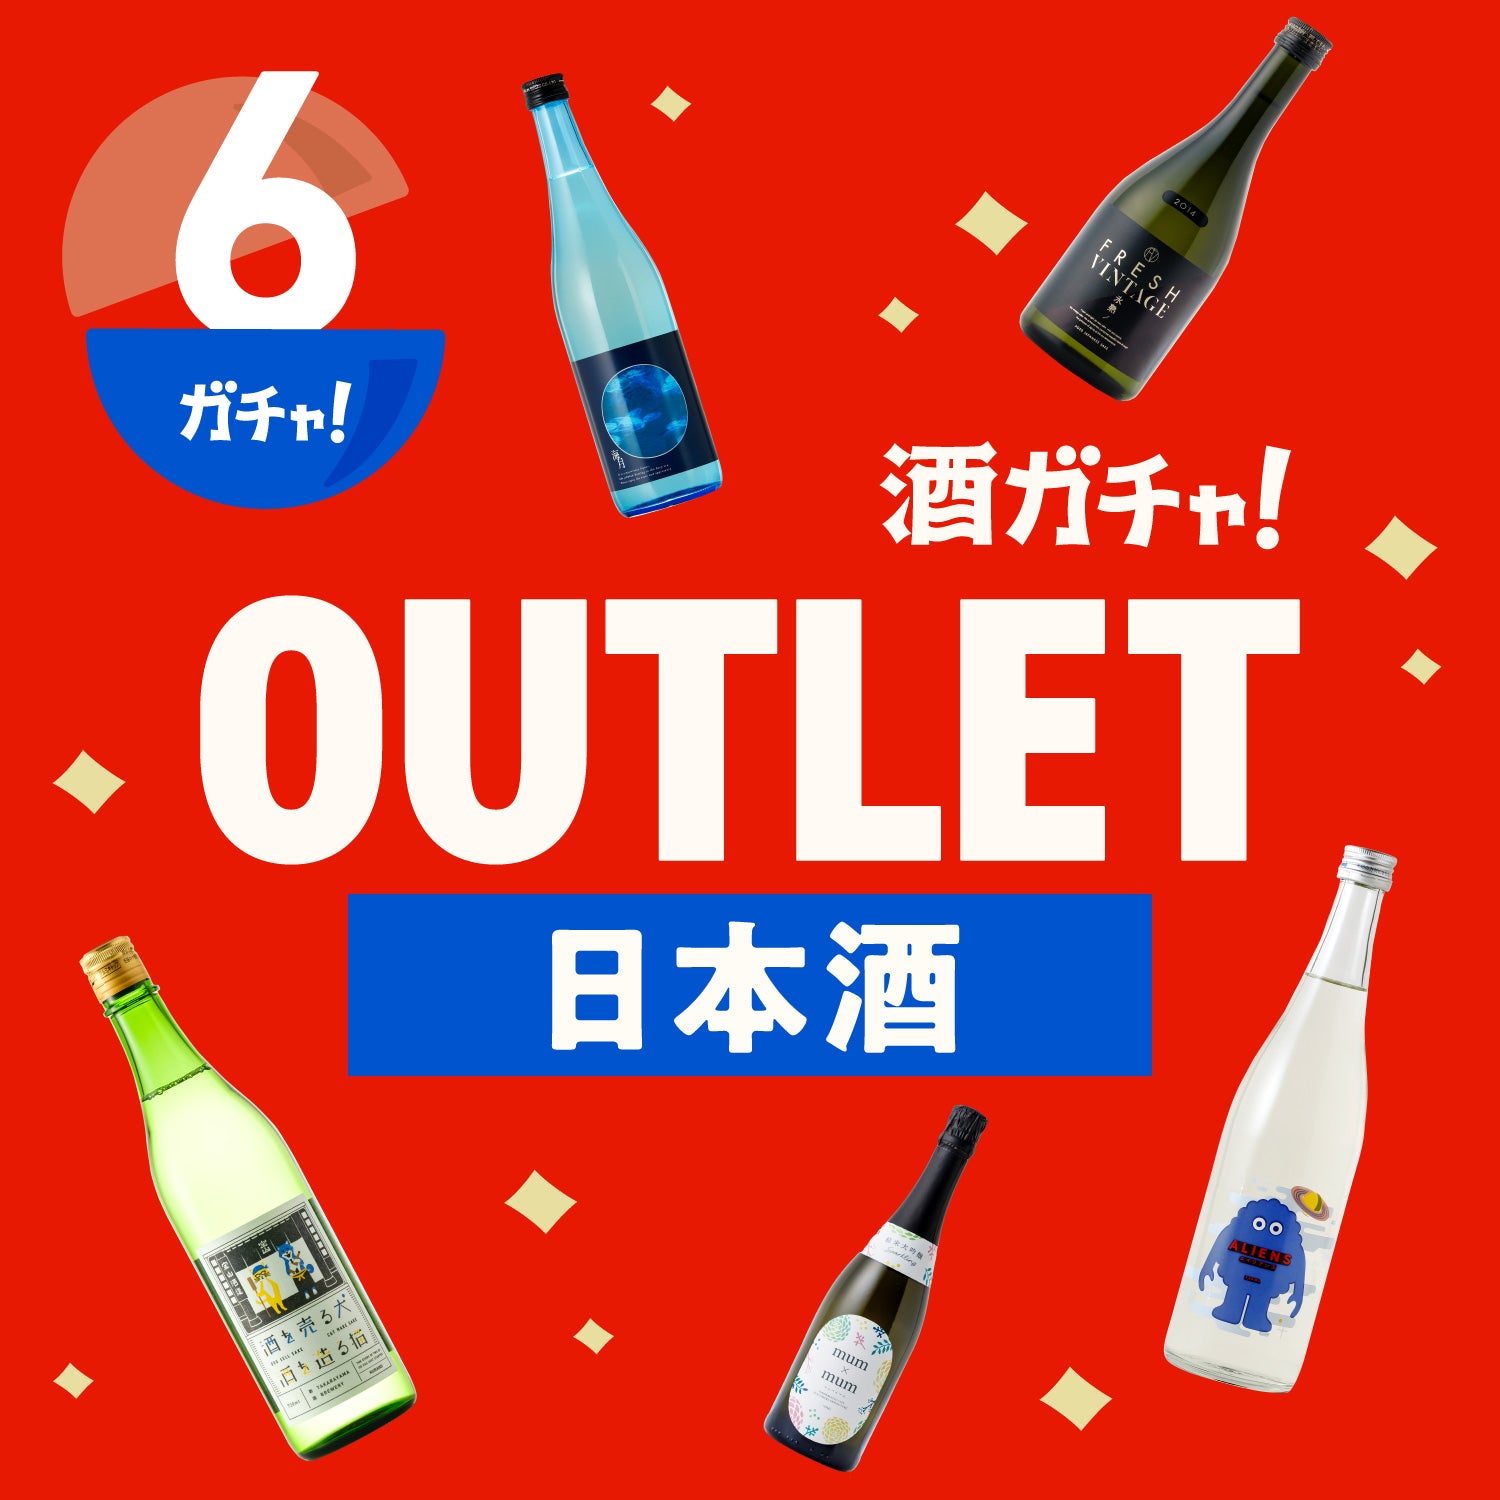 コラボ酒ガチャ-薄桜鬼- | のセット | 酒・日本酒の通販ならKURAND